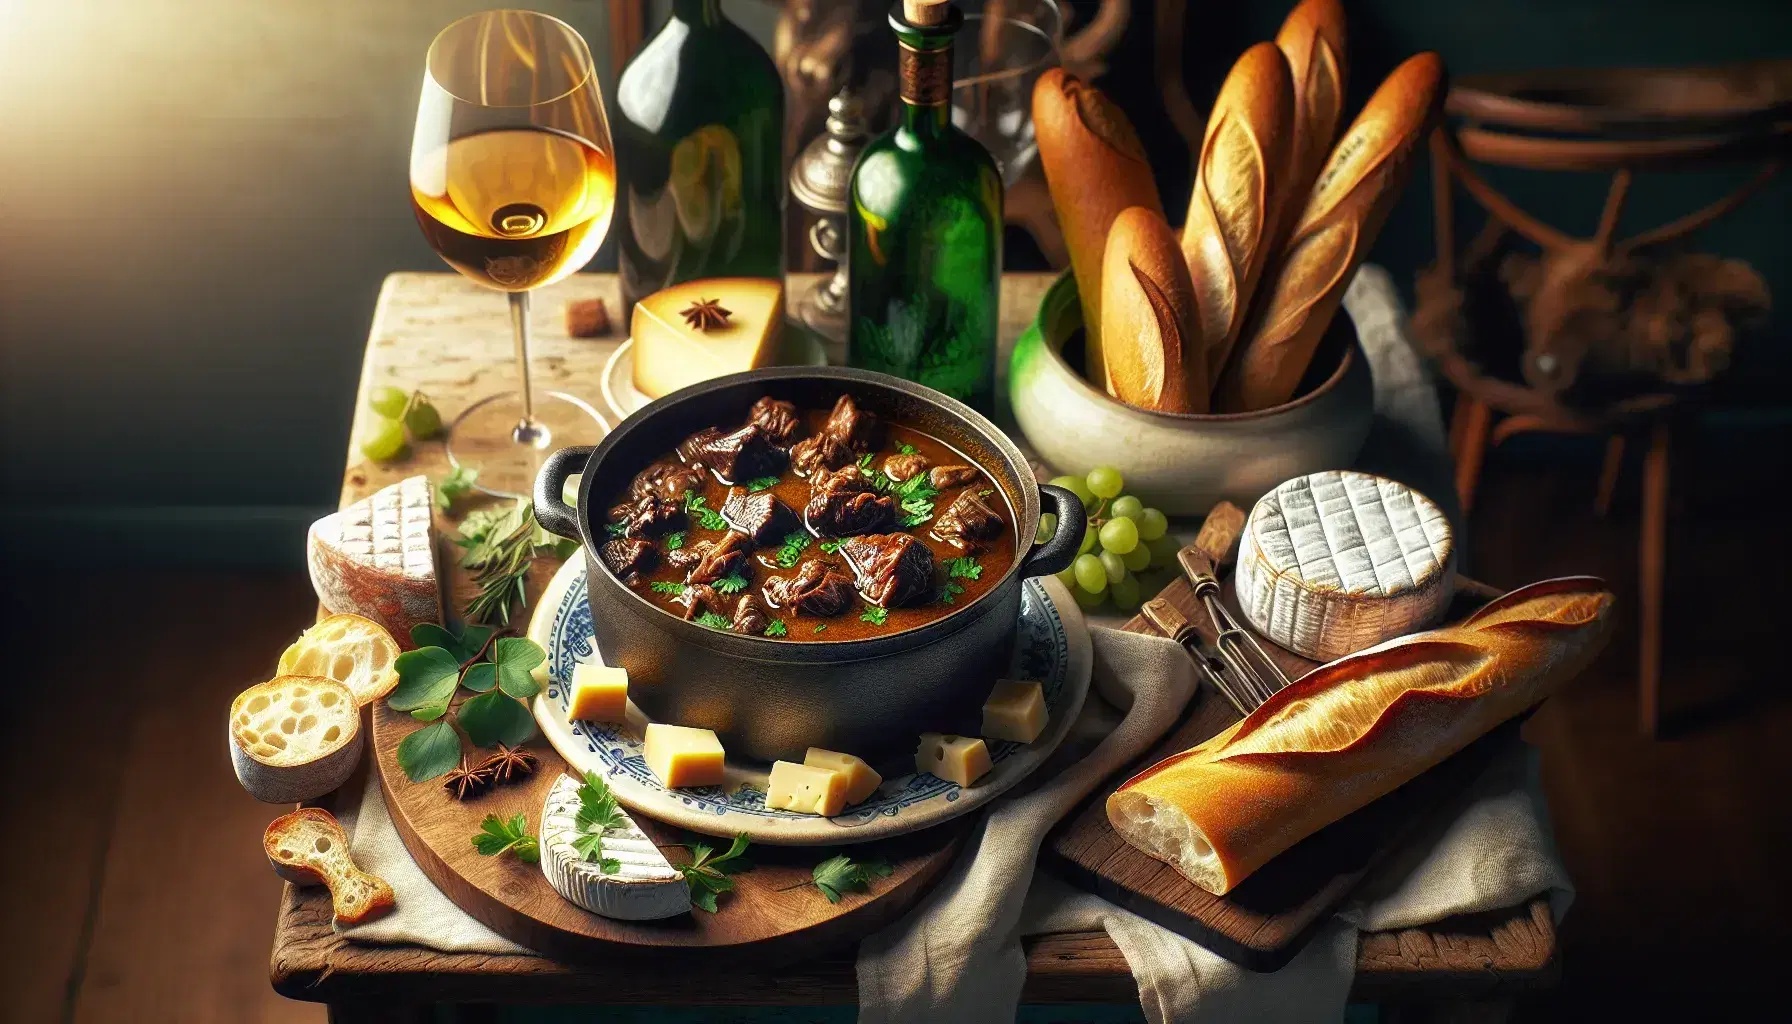 Mesa rústica con guiso de carne en olla de hierro, selección de quesos franceses en plato de cerámica, baguette dorada en tabla de cortar, botella de vino y copas al fondo.